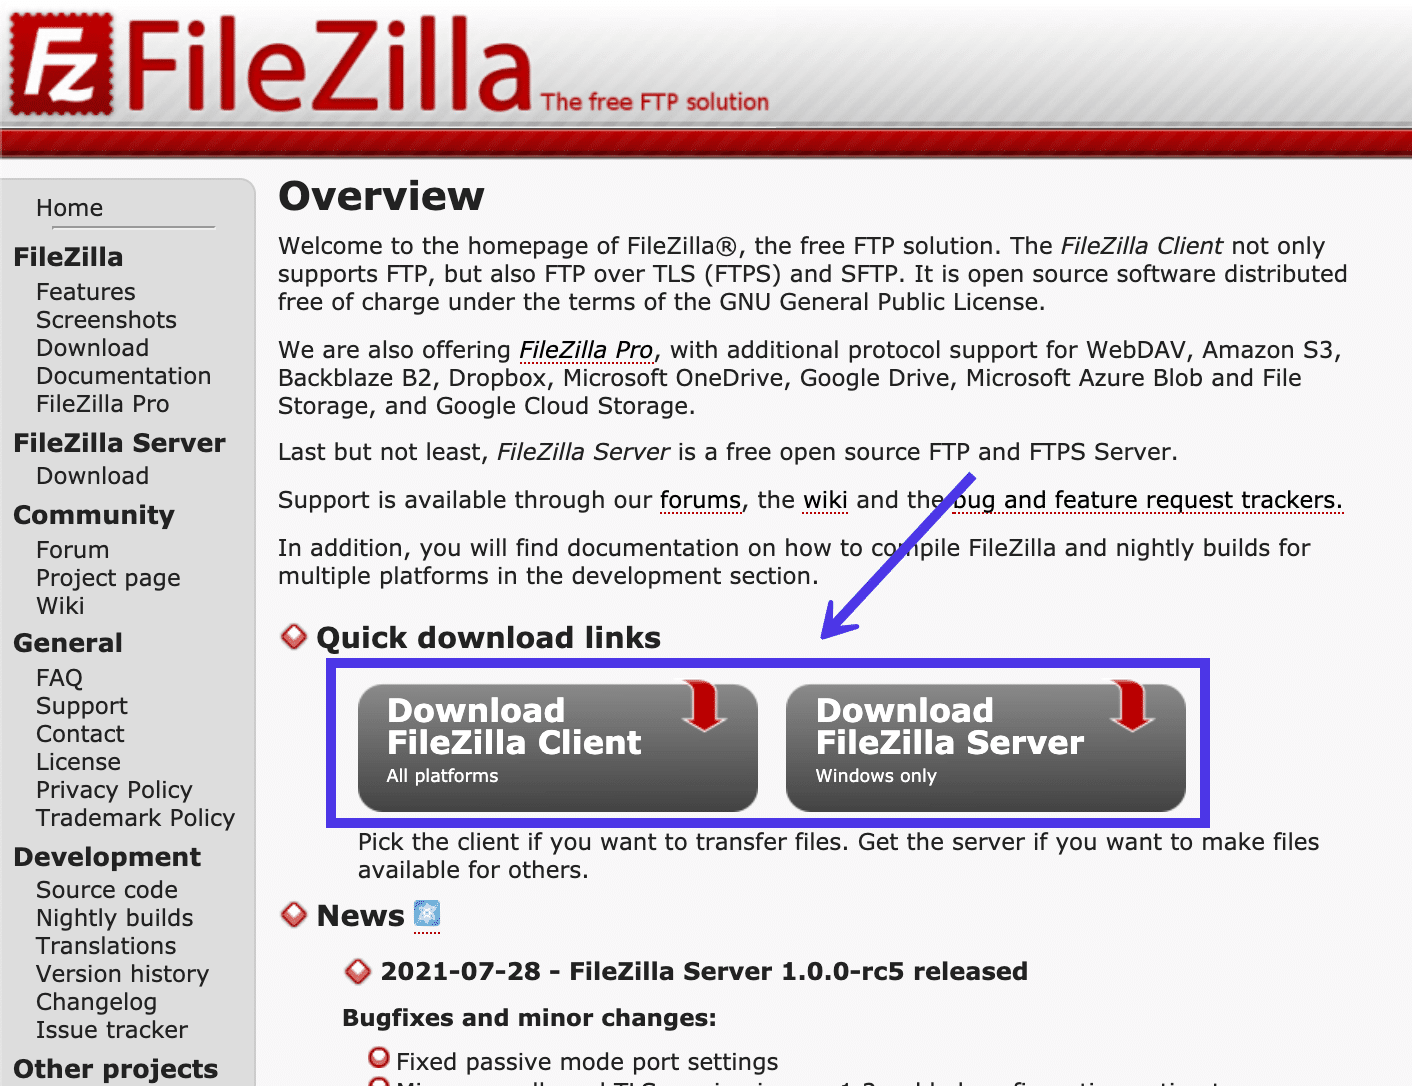 Para iniciar o processo de instalação, clique no botão Download FileZilla Client